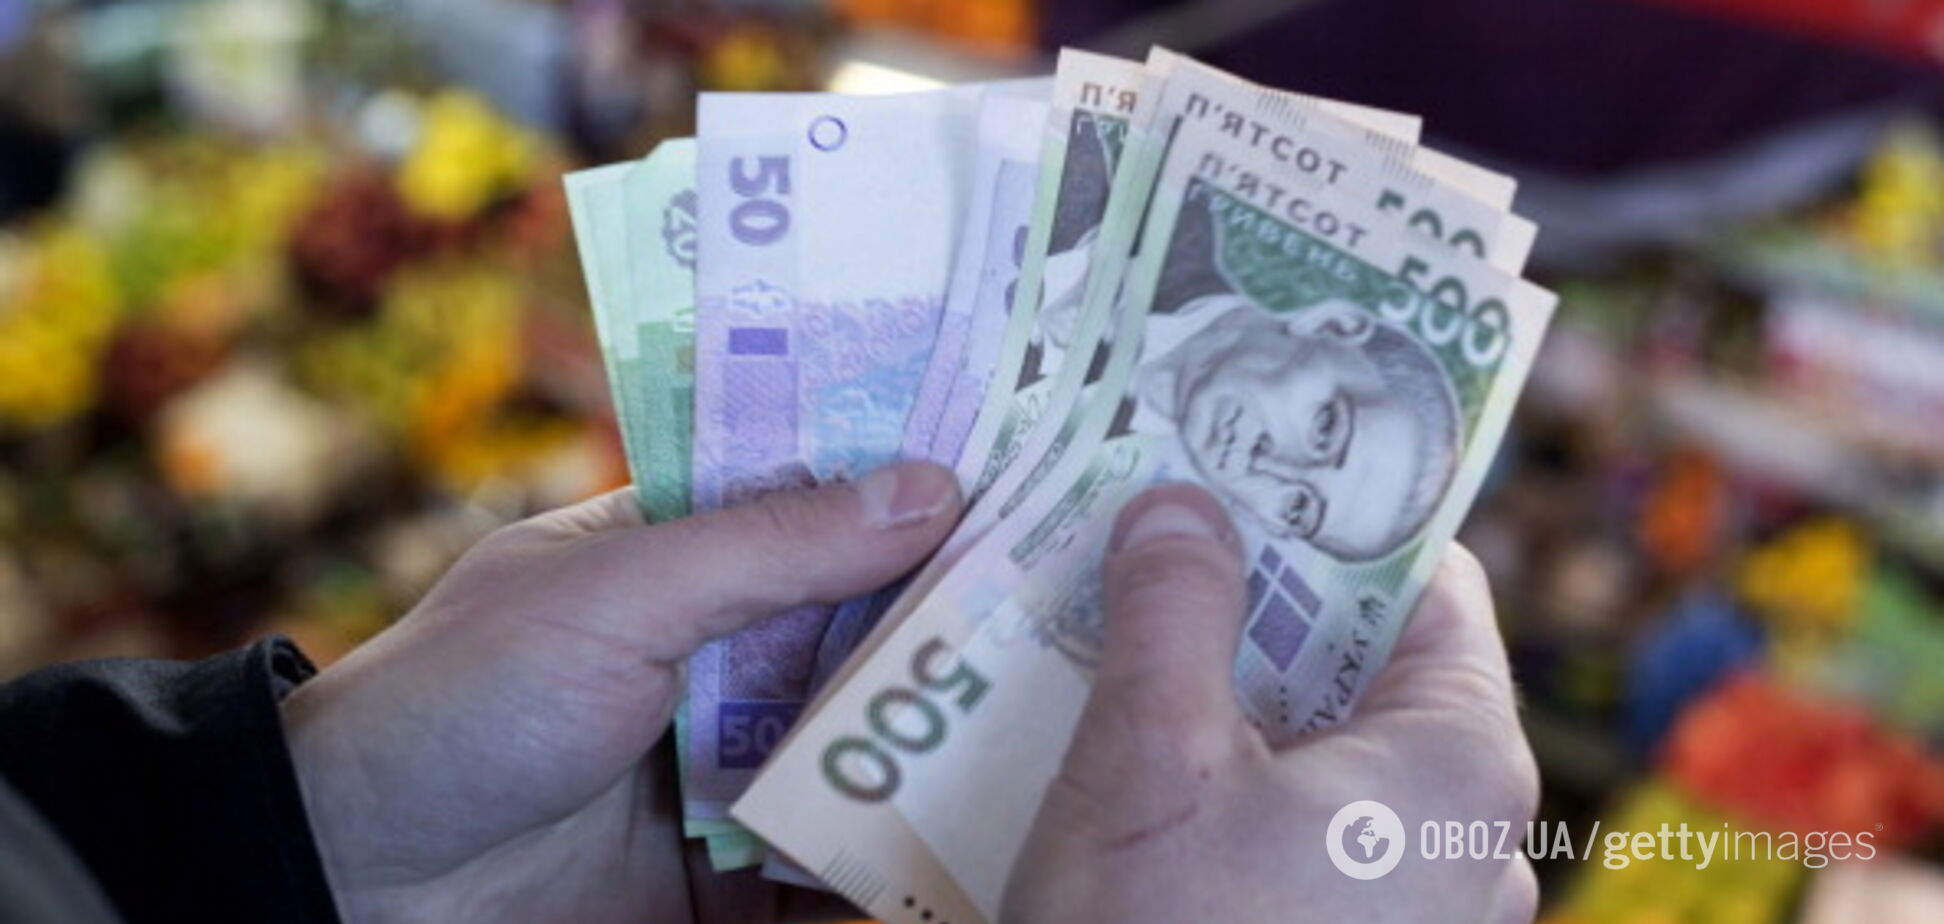 Величезні борги за комуналку: експерт назвав проблему, з якою зіткнуться українці